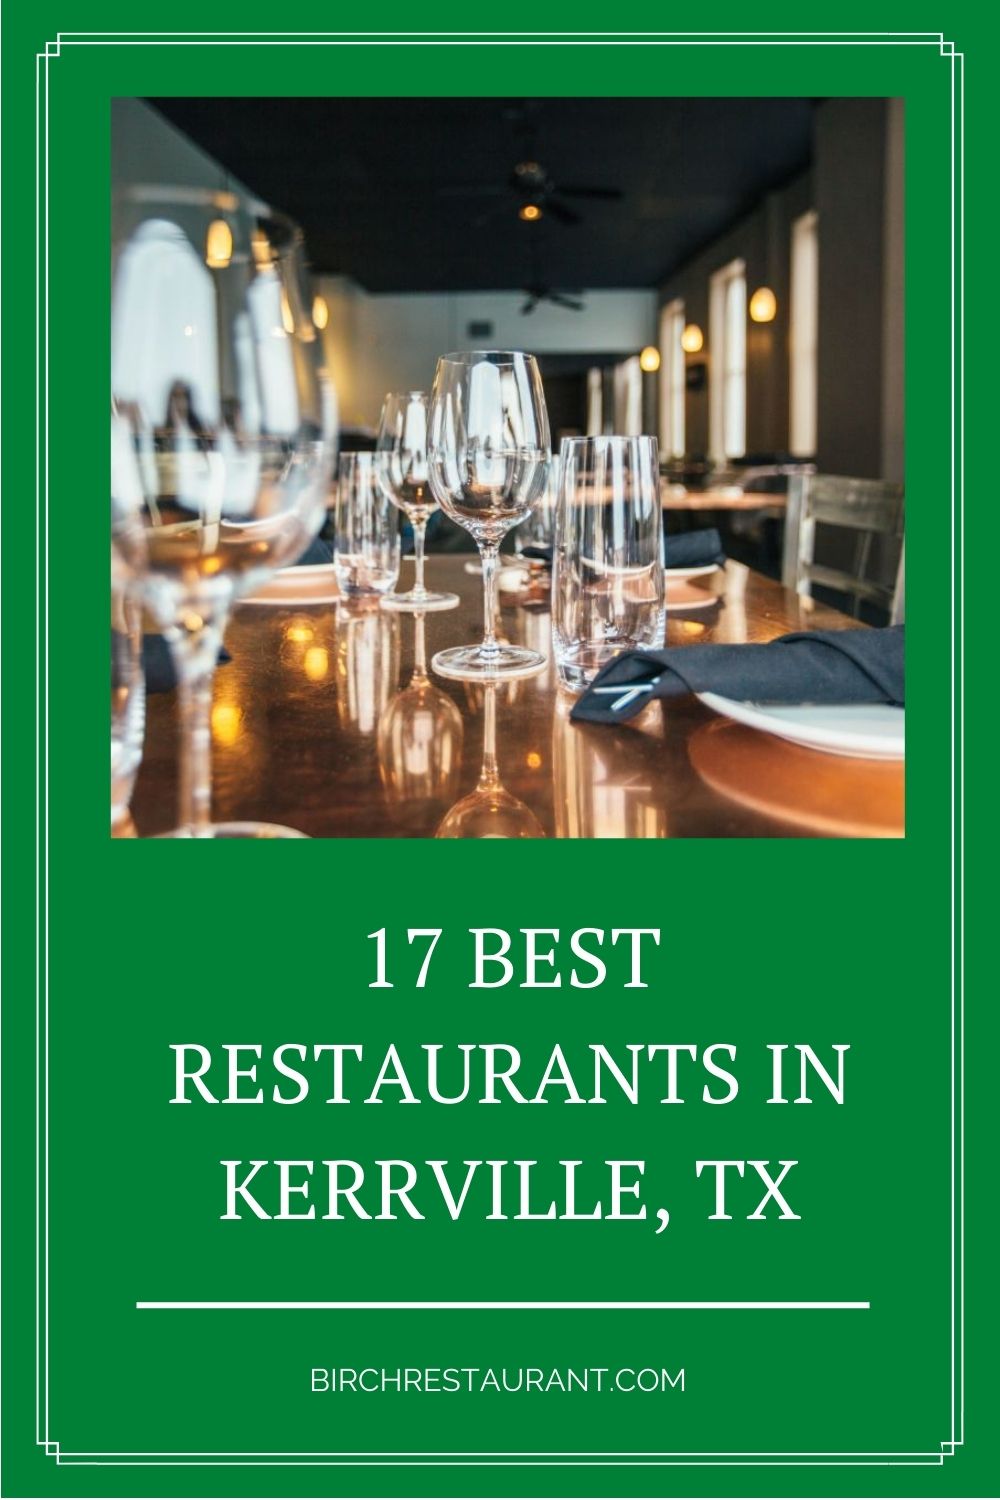 Best Restaurants in Kerrville